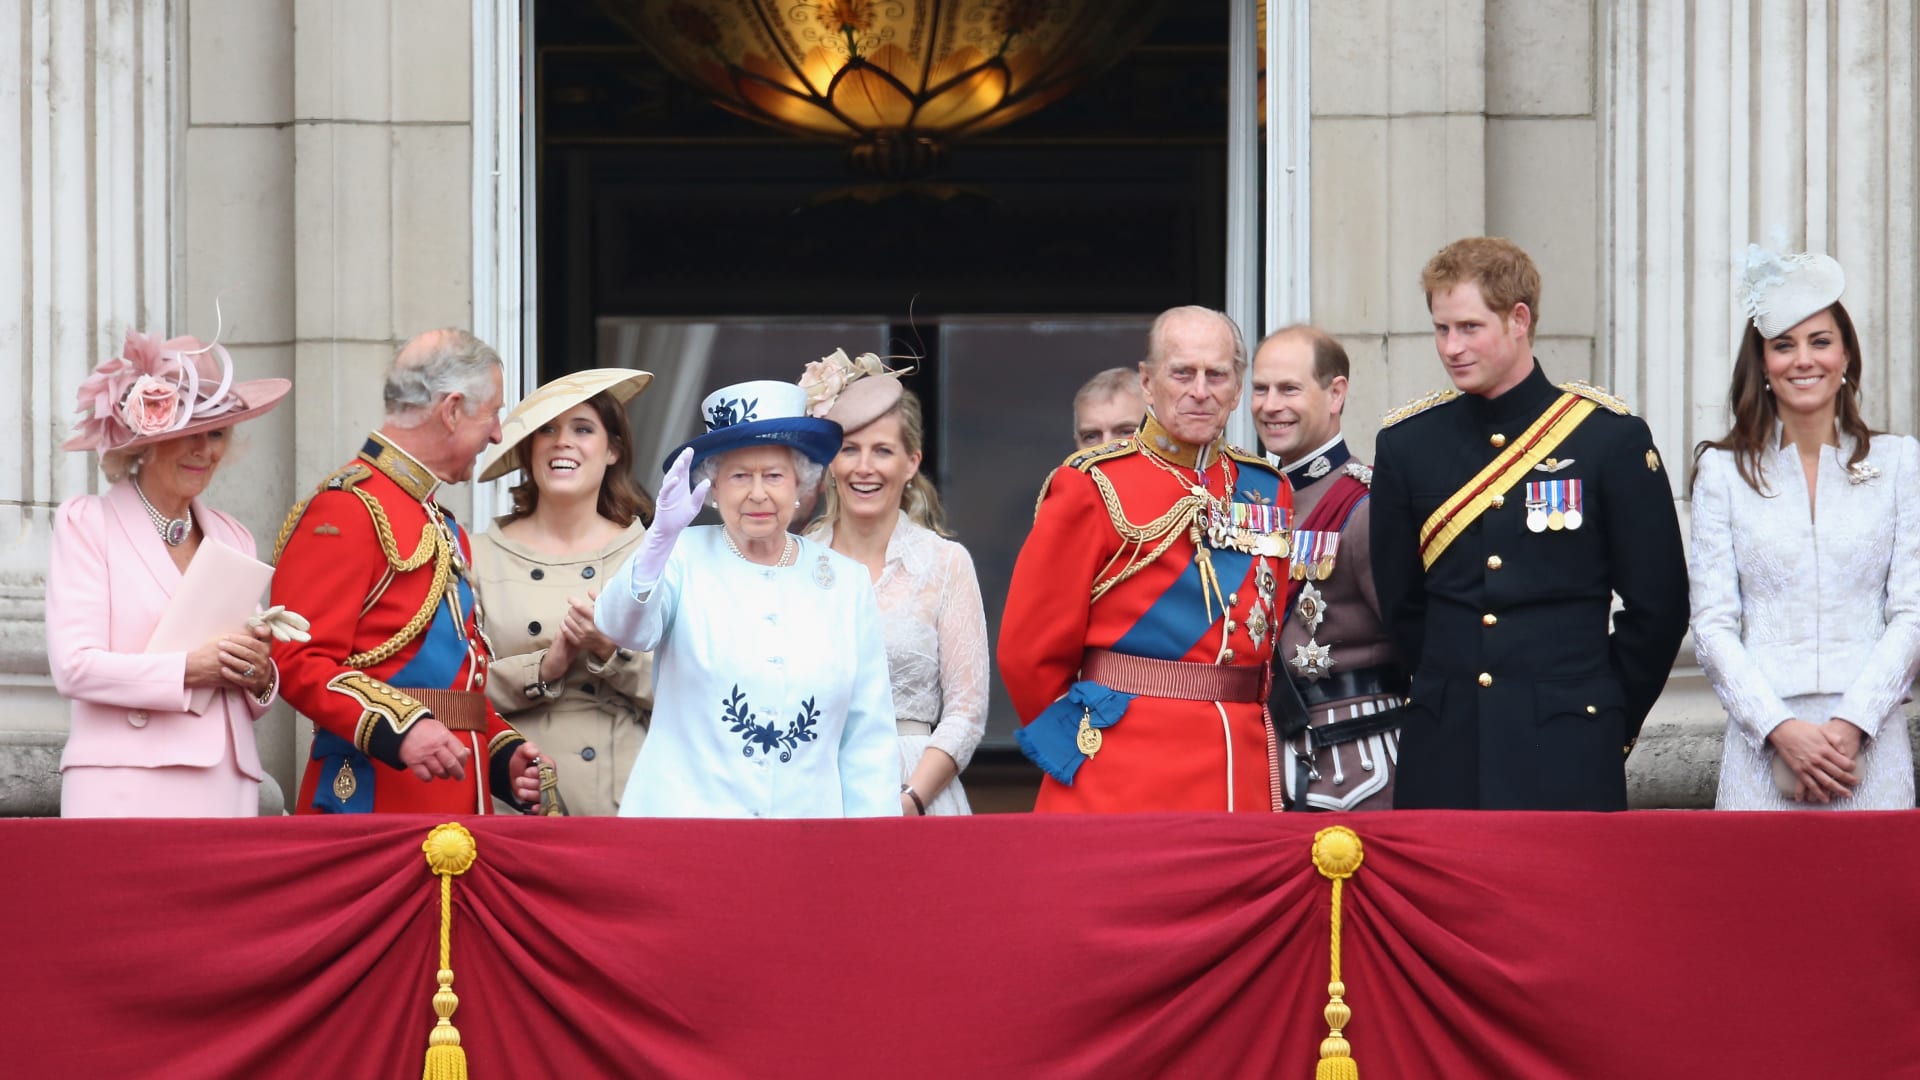 الأمير هاري يصل إلى بالمورال لوداع الملكة إليزابيث.. ومقارنة بيوم وفاة الملك جورج السادس عام 1952